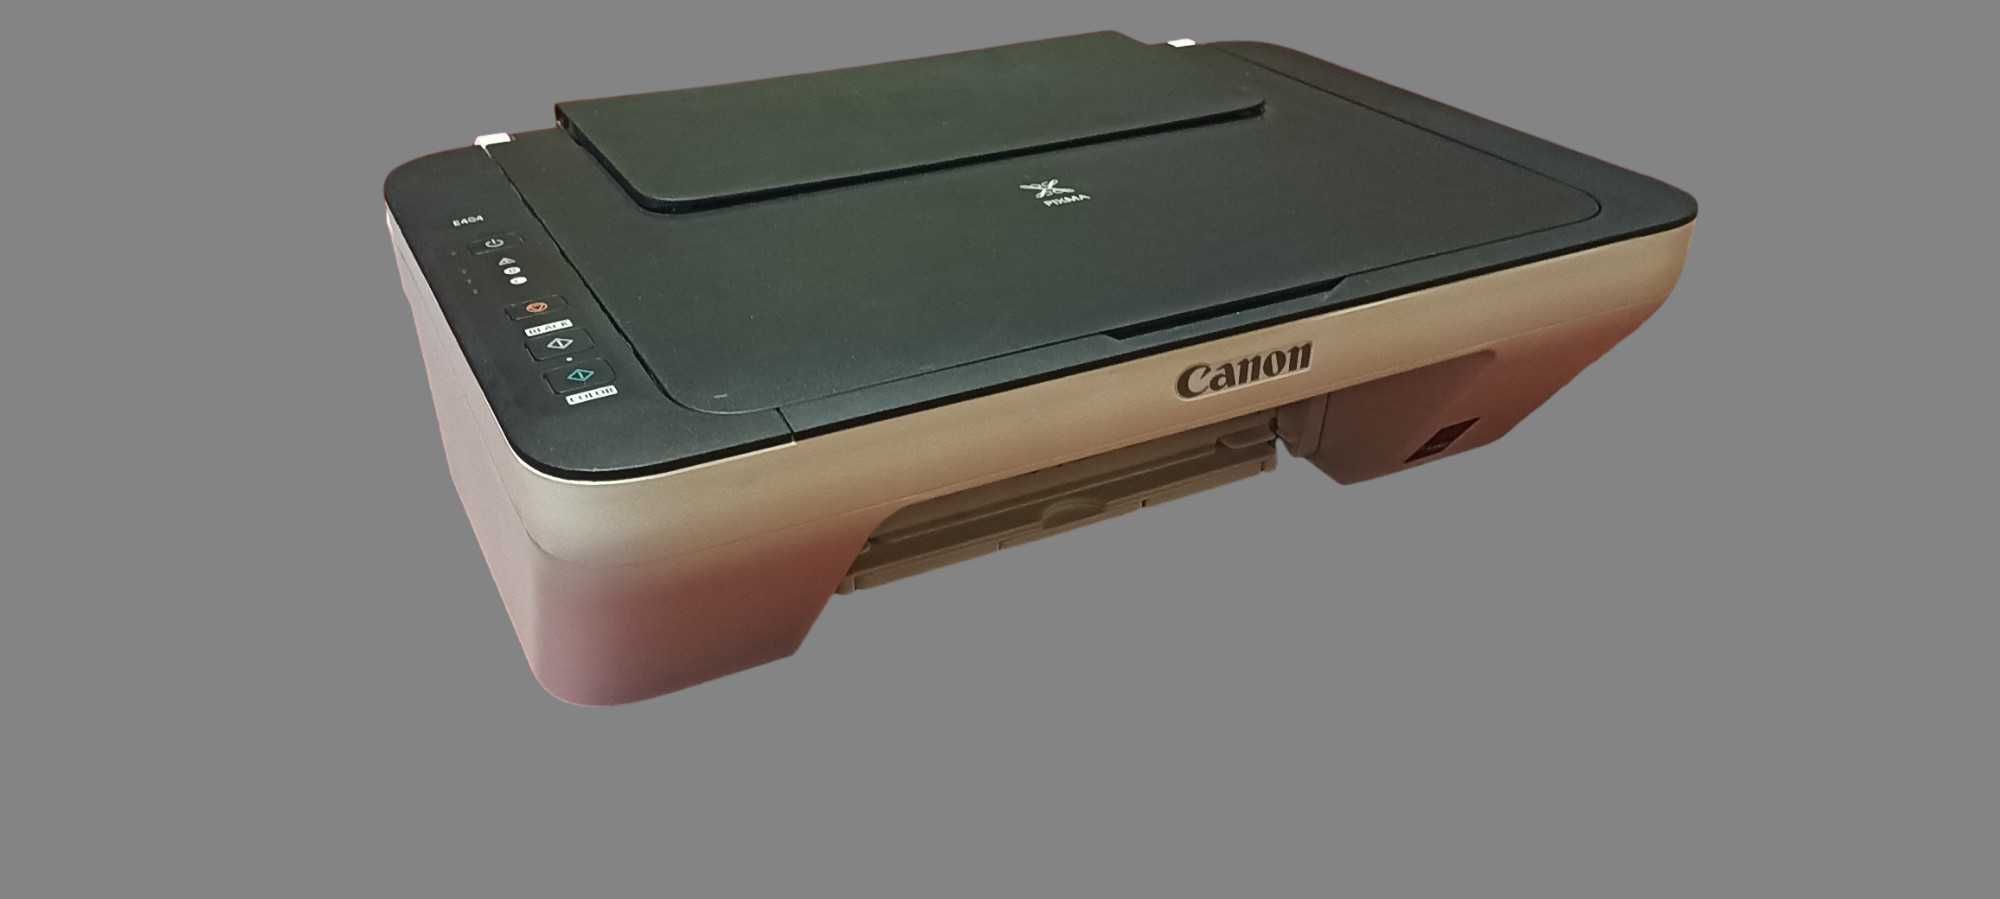 Принтер Canon PIXMA E404 (МФУ, сканер) рабочий